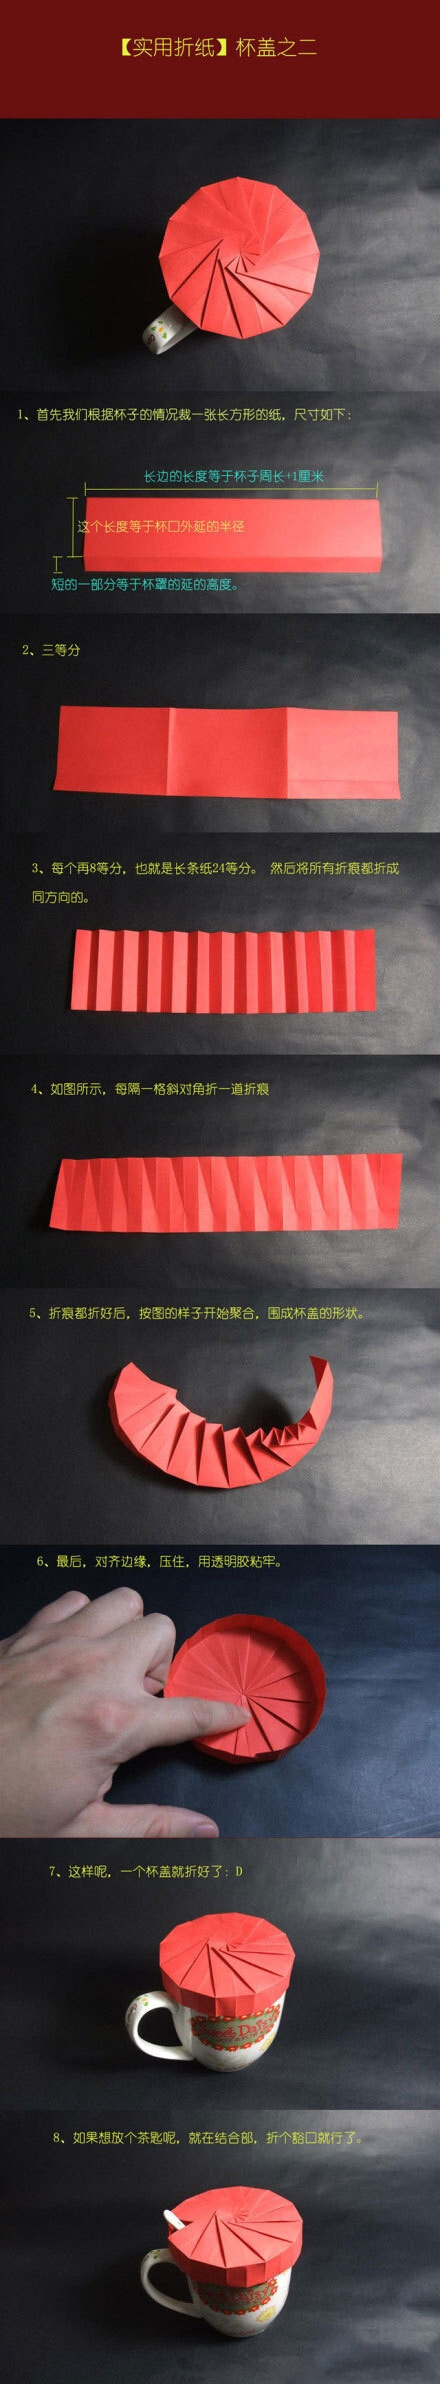 手工折纸盒子的教程在这里可以找到：http://www.zhidiy.com/shiyongzhiyi/，但是这个折纸教程的神奇之处是在于其可以被用来当作杯子的盖子，这样的制作还是很有趣的，学习一下吧！